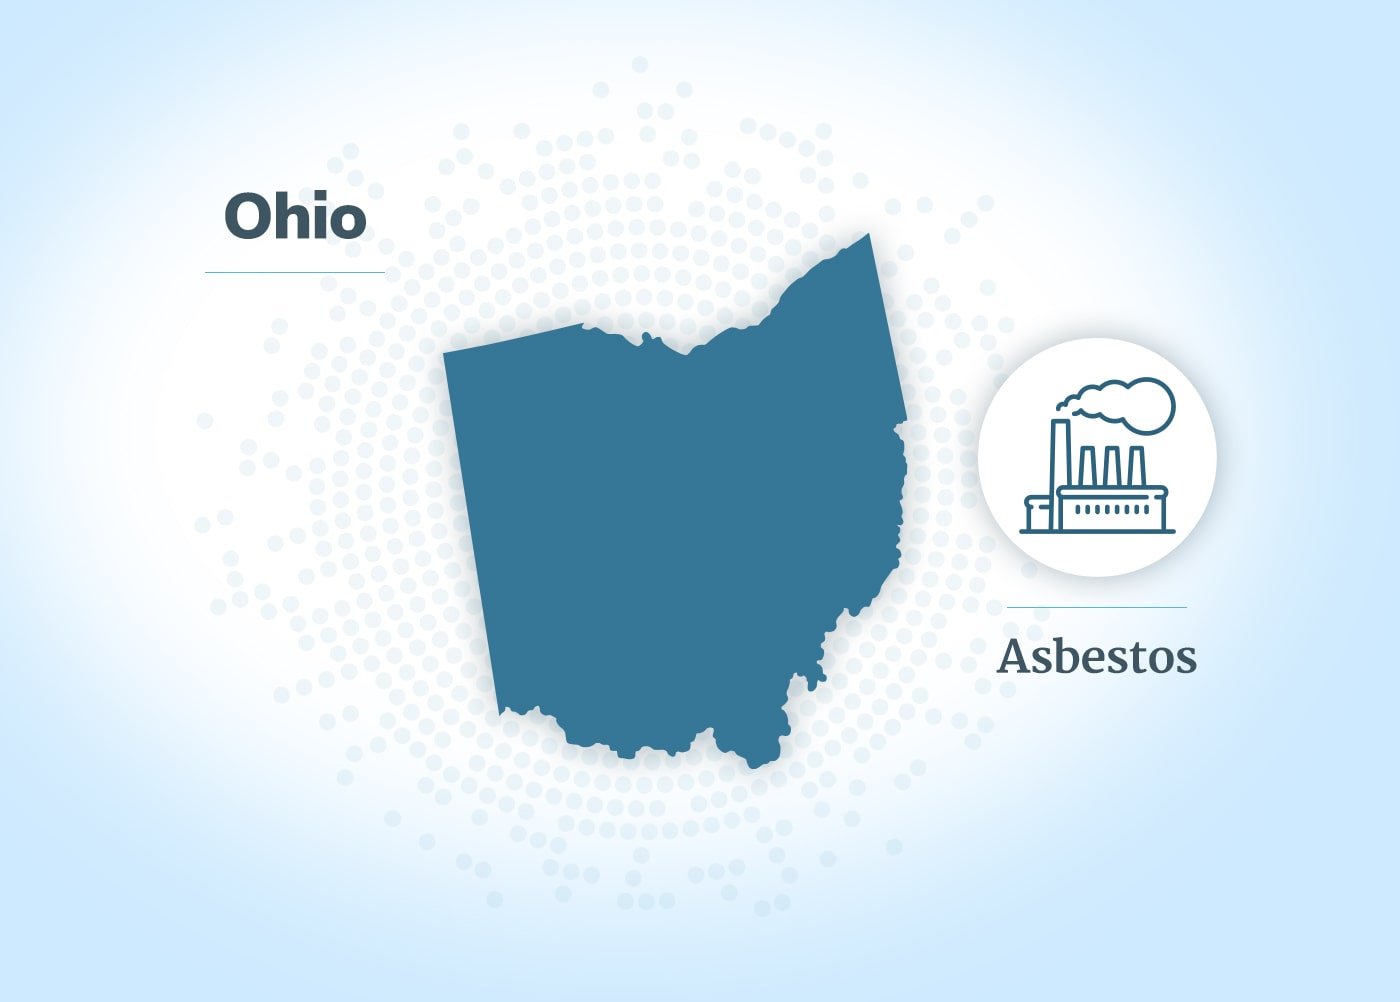 Asbestos exposure in Ohio